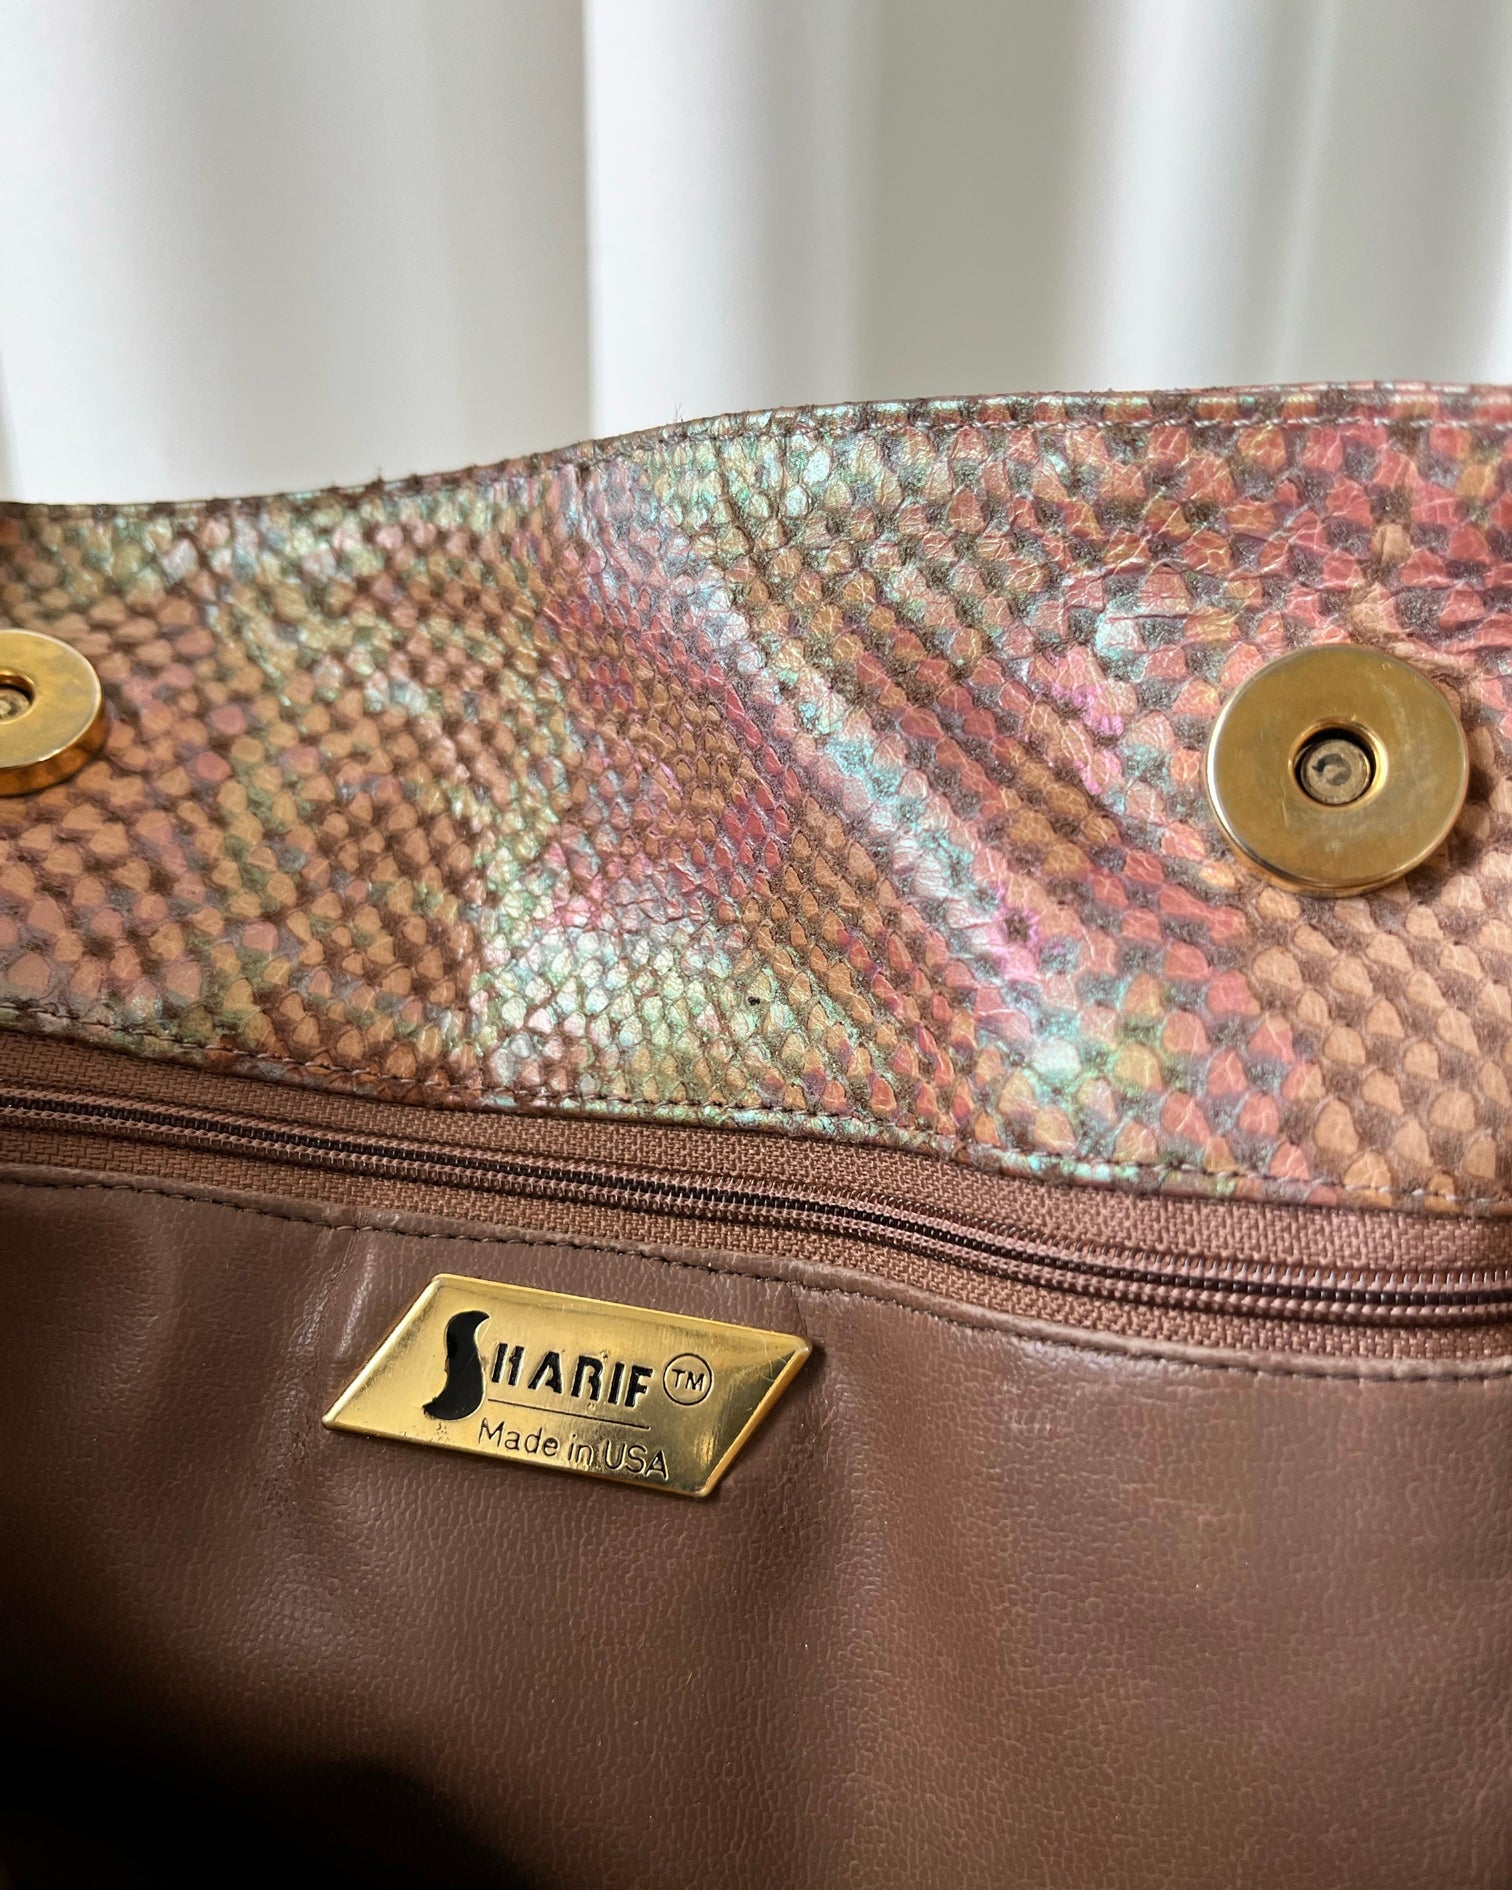 Brown Snakeskin Handbag, Unique Gold Metal Hardware